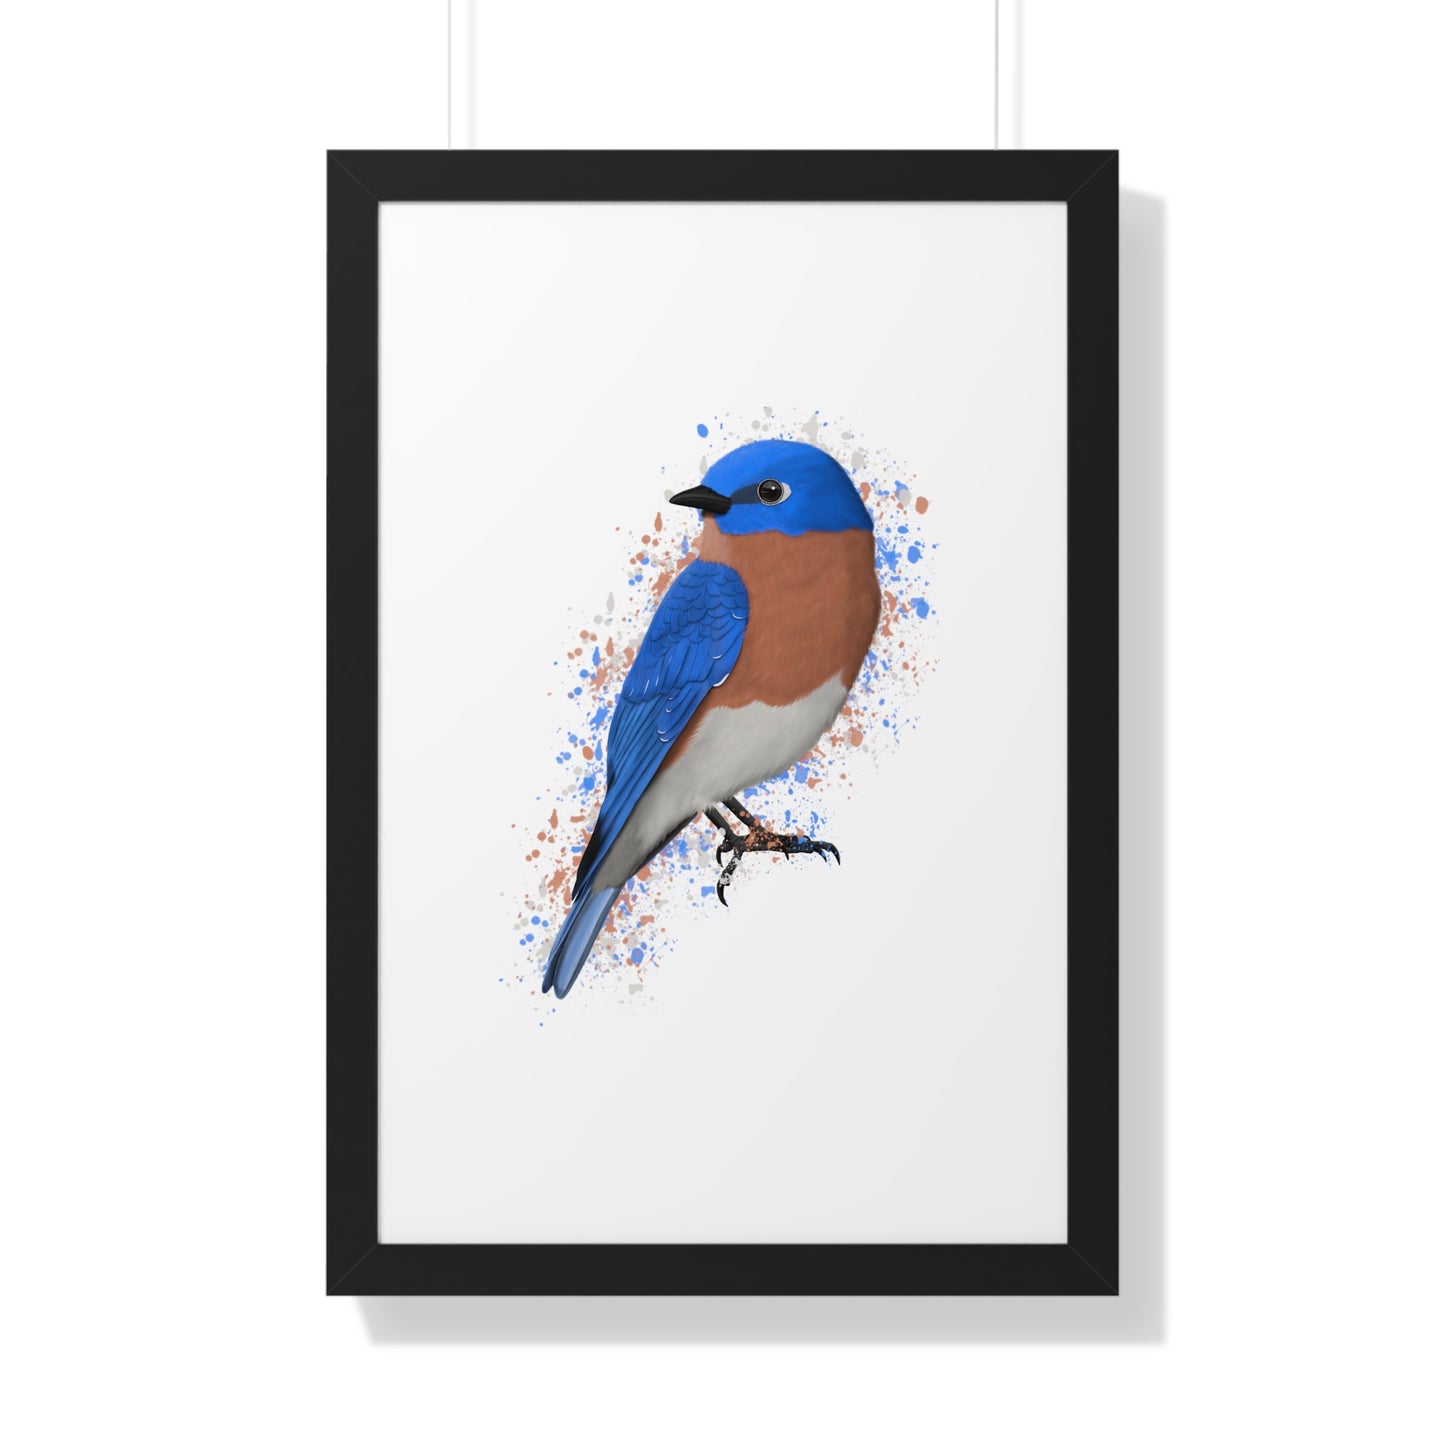 bluebird bird art framed poster